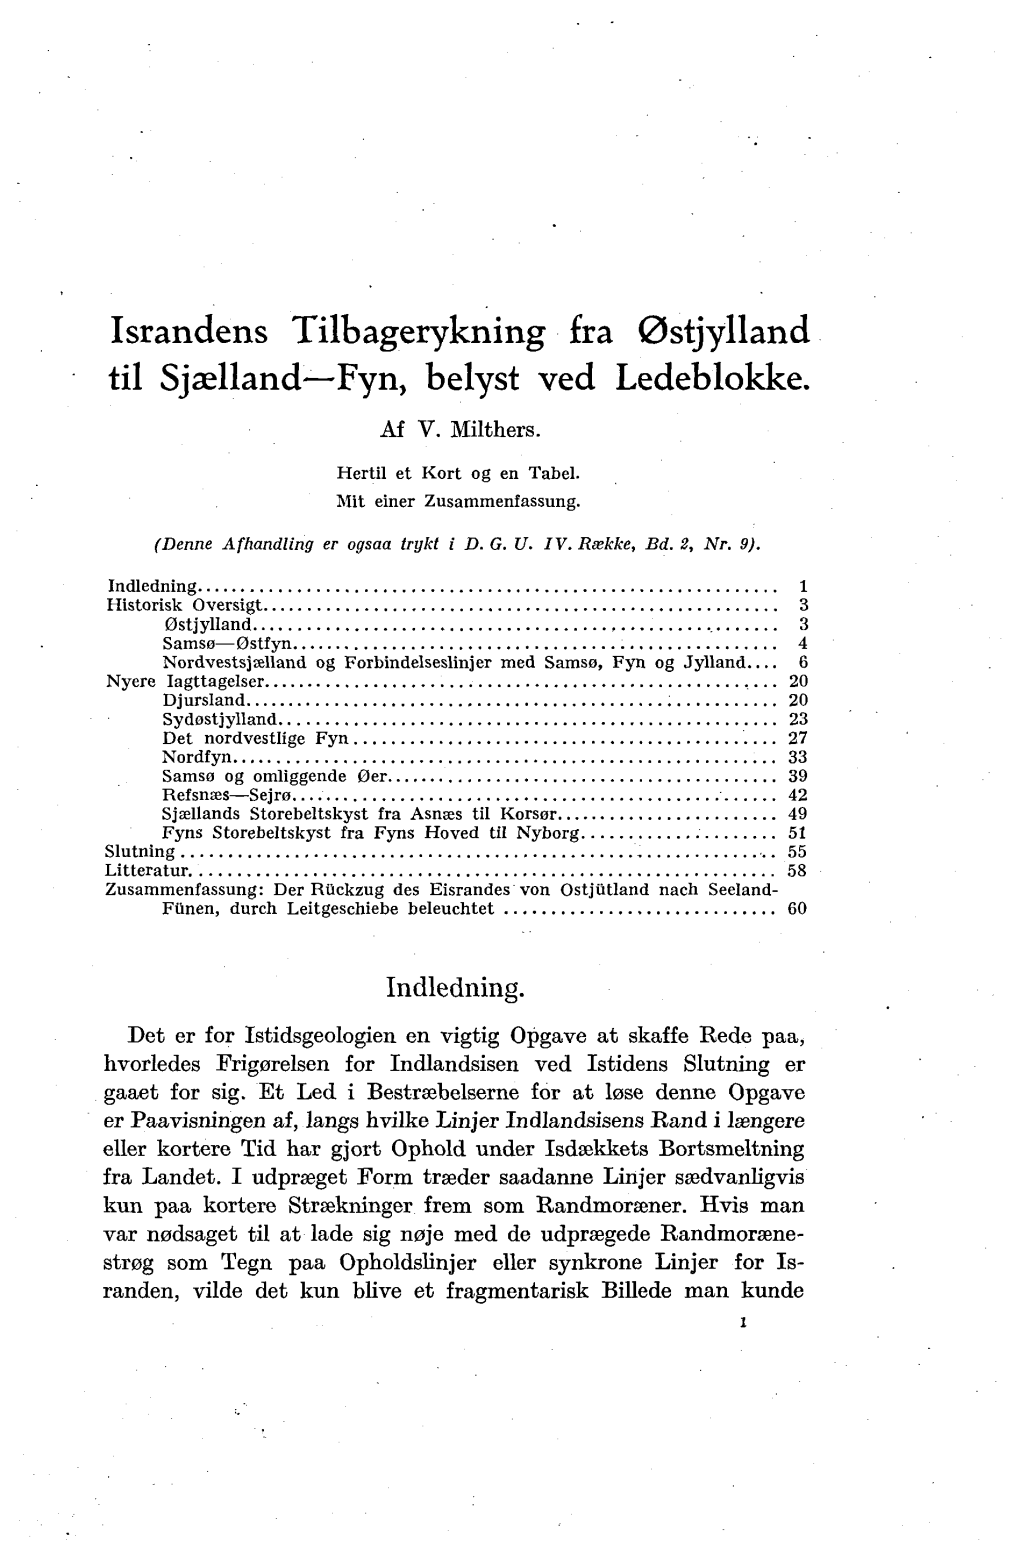 Meddelelser Fra Dansk Geologisk Forening Bind 8, Hefte 1, S. 1-70